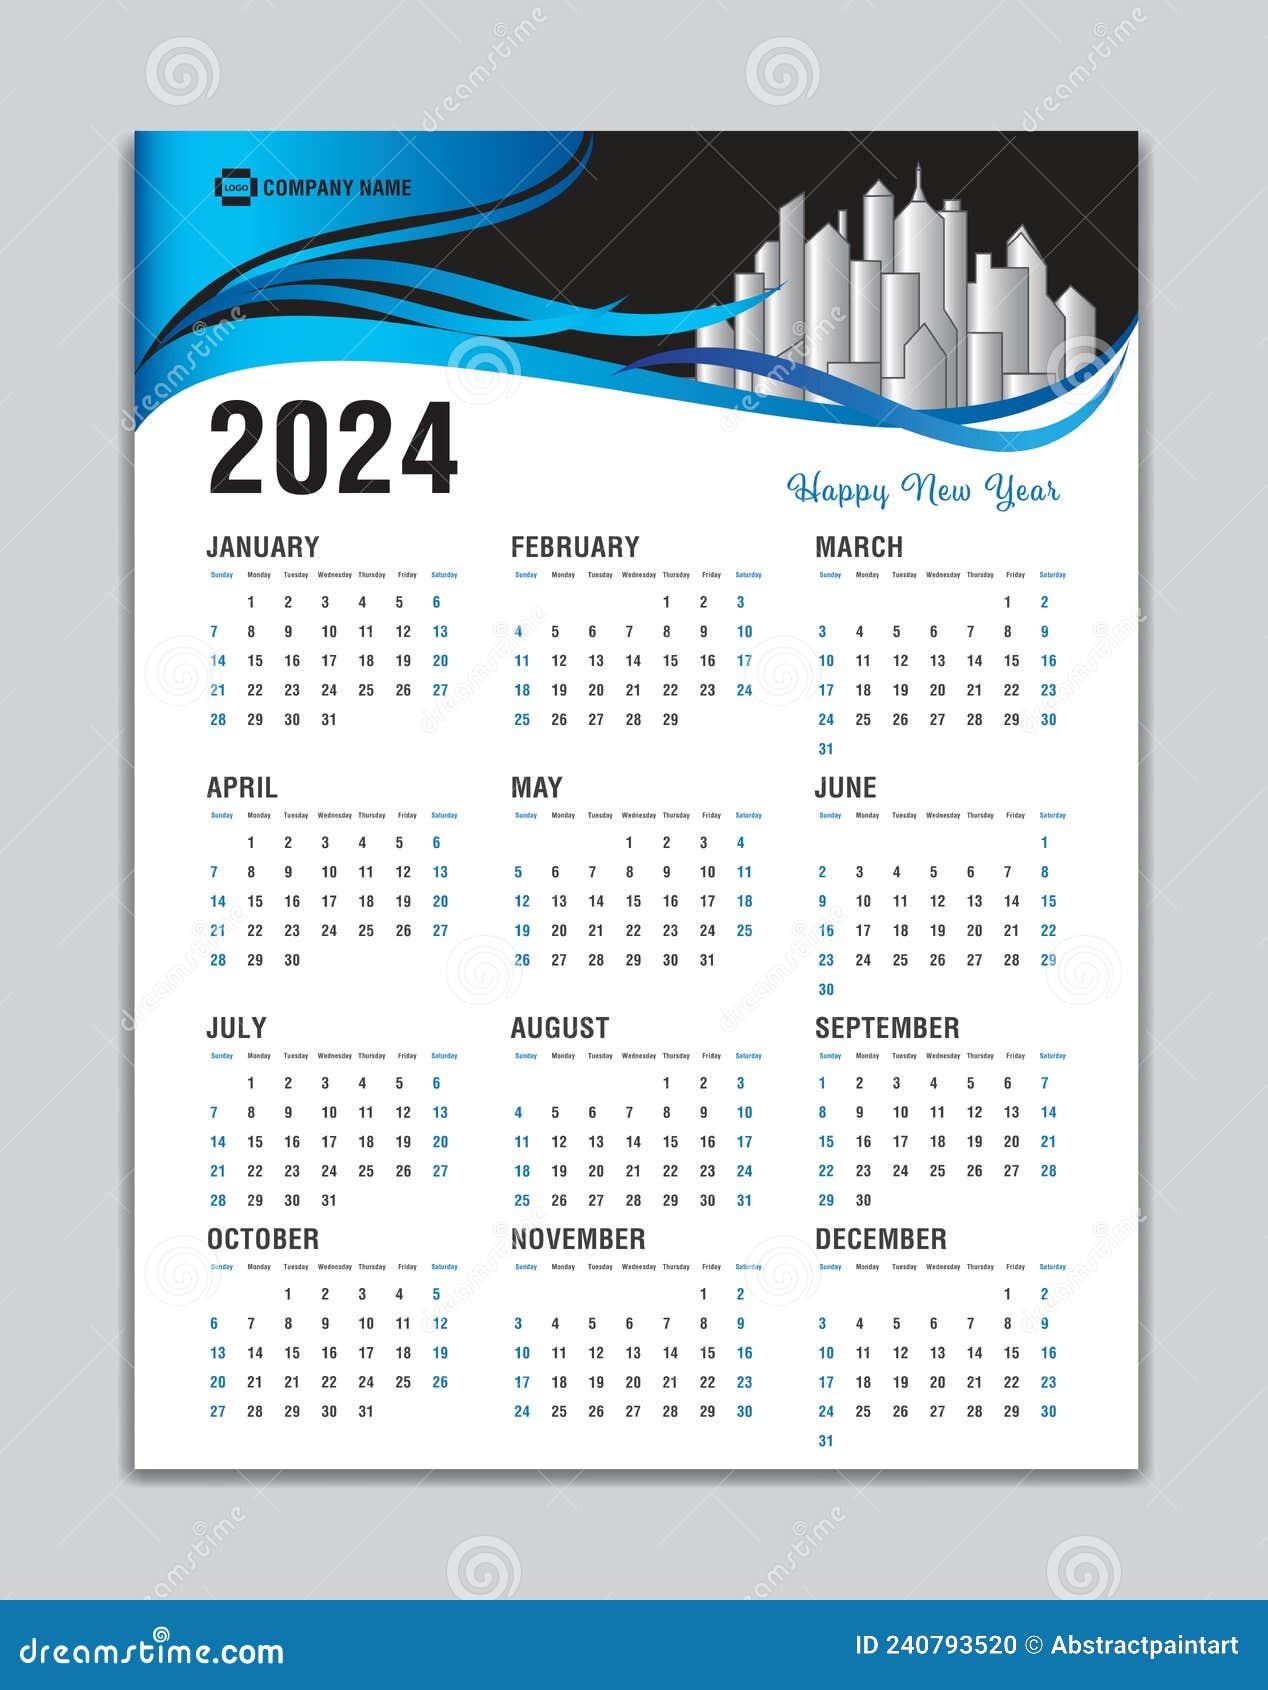 Vecteur de modèle de calendrier mural 2024 - TemplateMonster